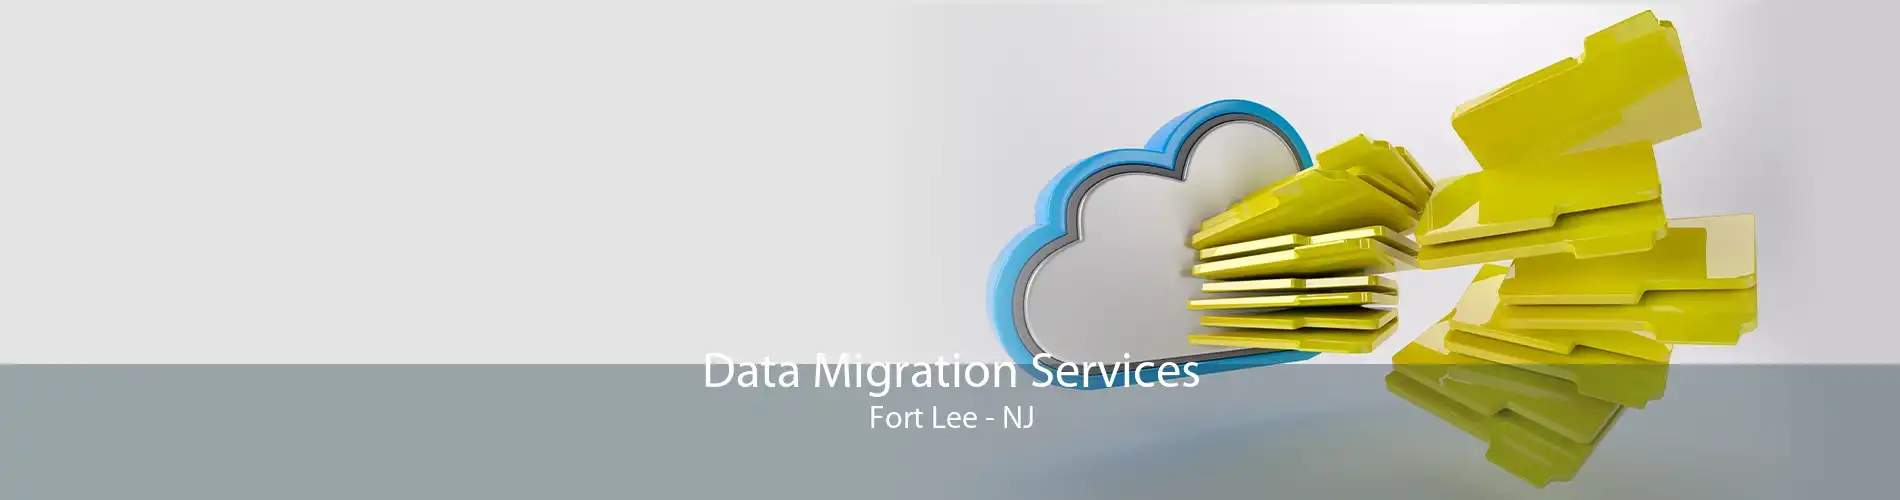 Data Migration Services Fort Lee - NJ